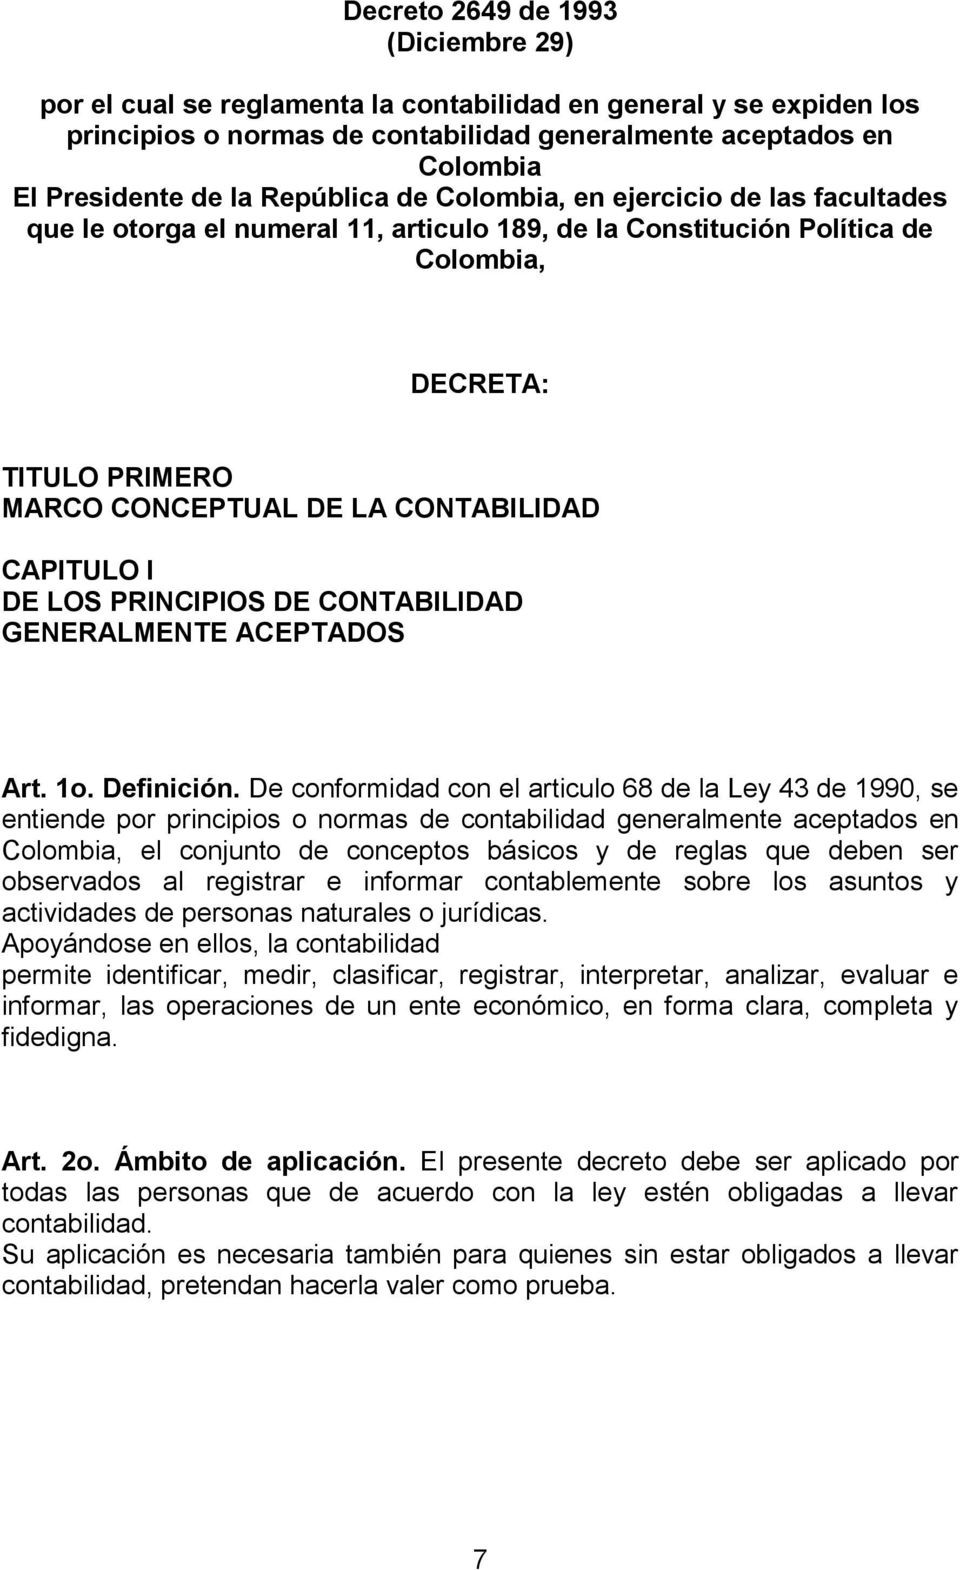 CAPITULO I DE LOS PRINCIPIOS DE CONTABILIDAD GENERALMENTE ACEPTADOS Art. 1o. Definición.